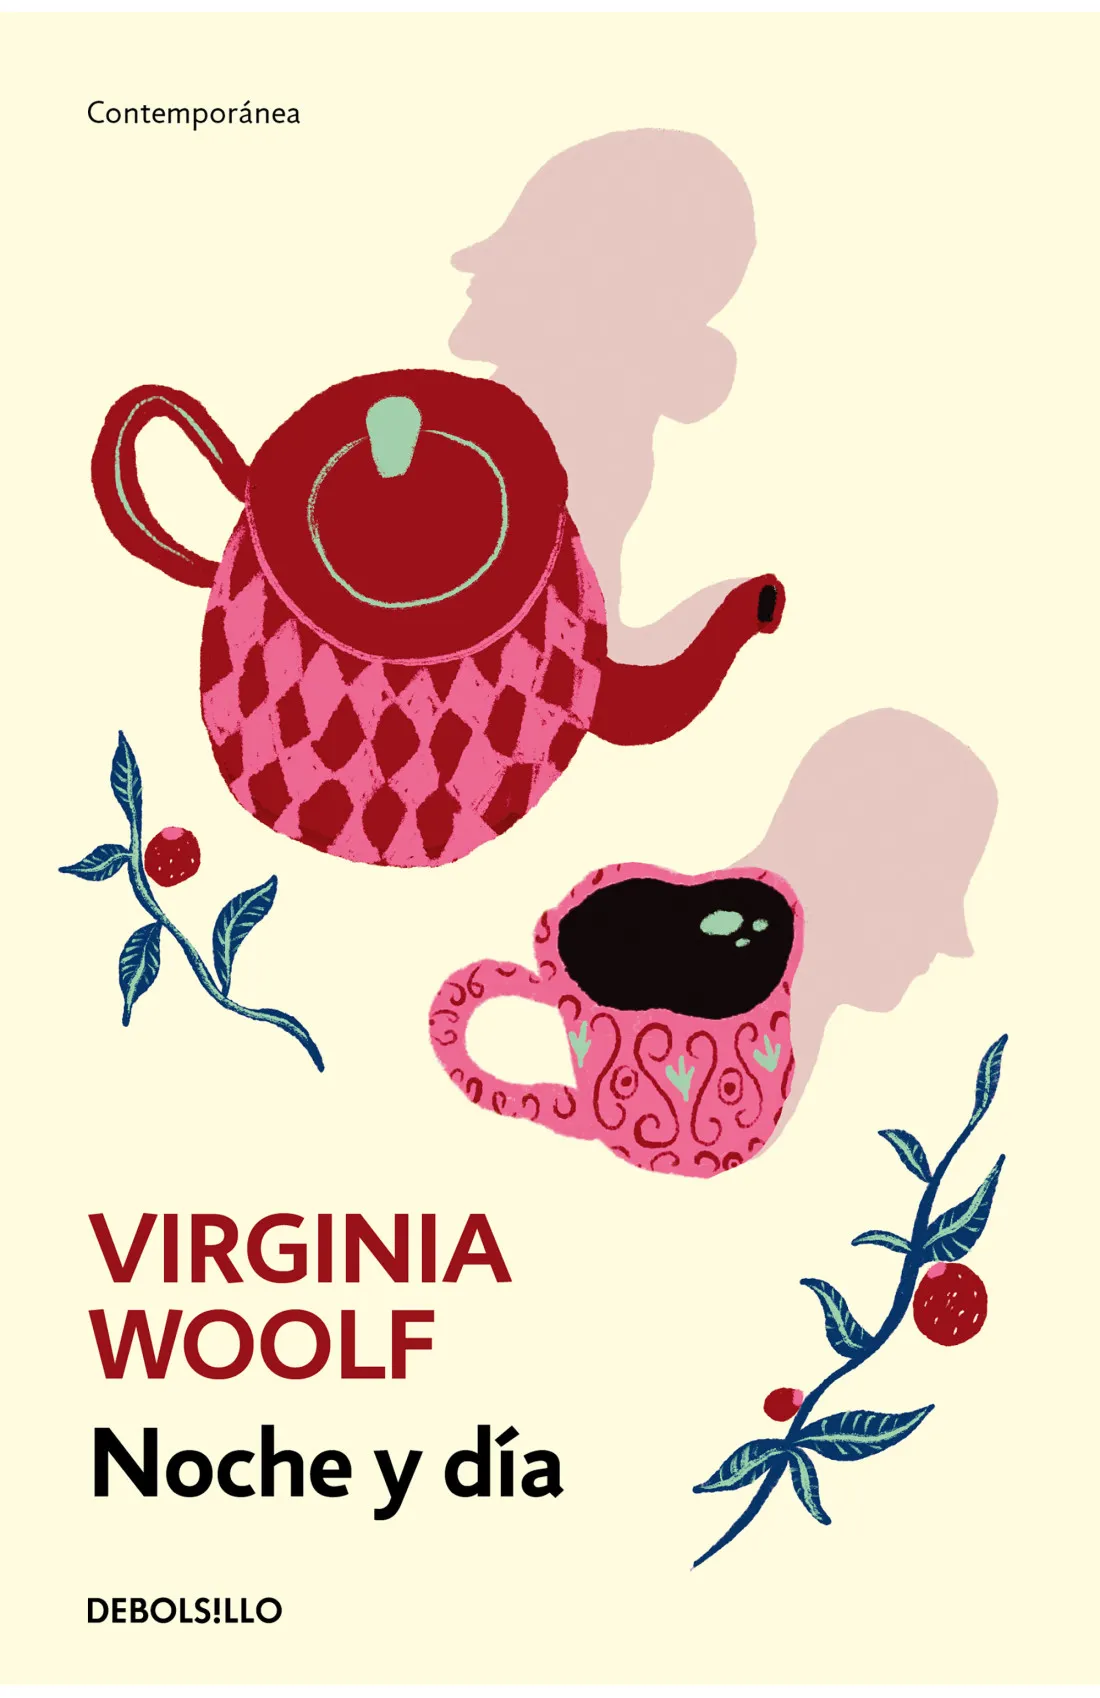 Zenda recomienda: Noche y día, de Virginia Woolf